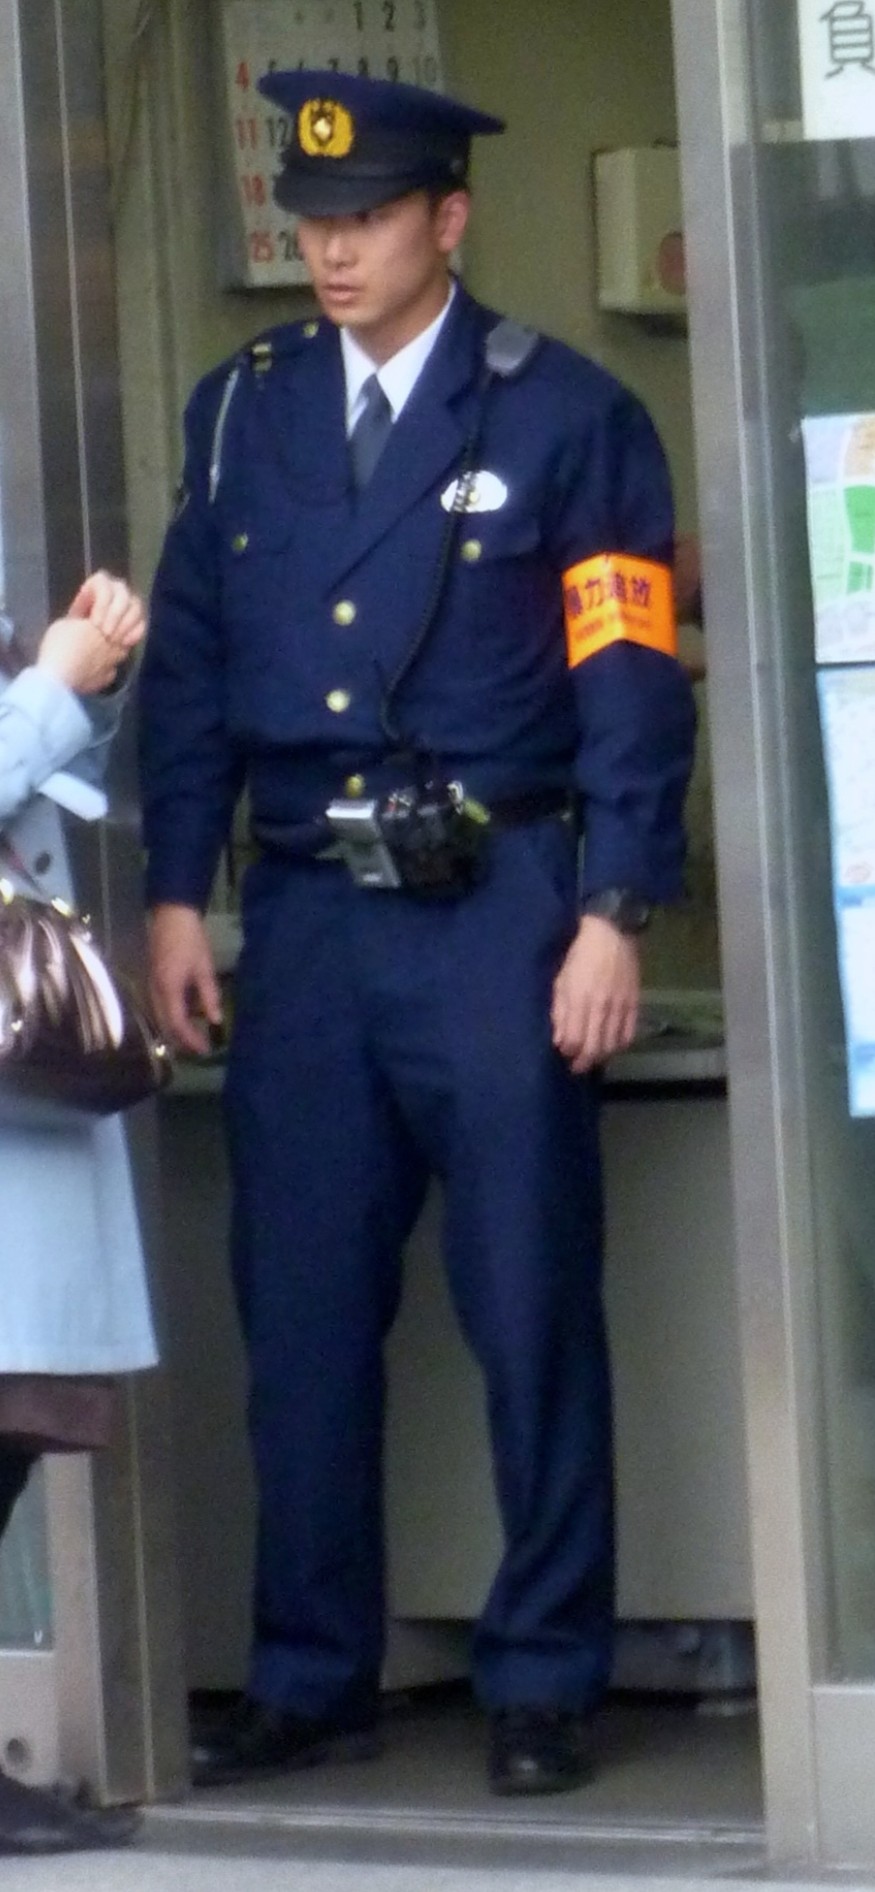 悠人 Haruto 在 Twitter 上 Wikipediaの 警察官 日本 のページで掲載されてるお巡りさんがイケメンくさそうですこ この盗撮っぽい感じもなんとも良い笑 そしてそして制帽越しのうなじもしこい T Co Nt1idjg6pz Twitter